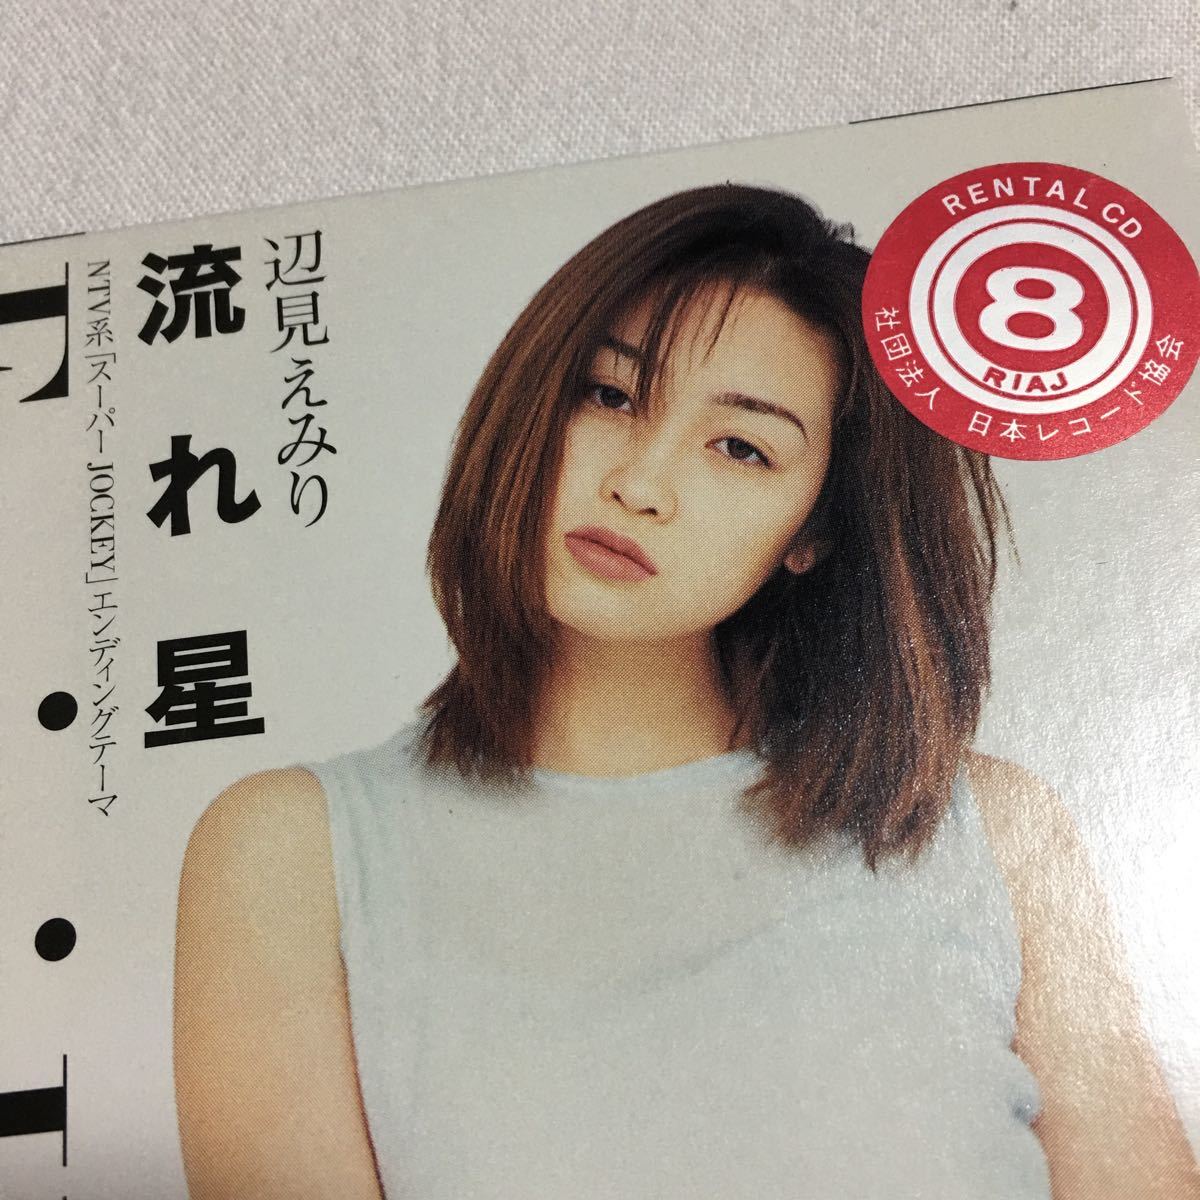  Henmi Emiri CD одиночный текущий звезда ( Spitz .. правильный . лирика композиция ), вы ..... чудо ( Inoue yosimasa композиция аранжировка )